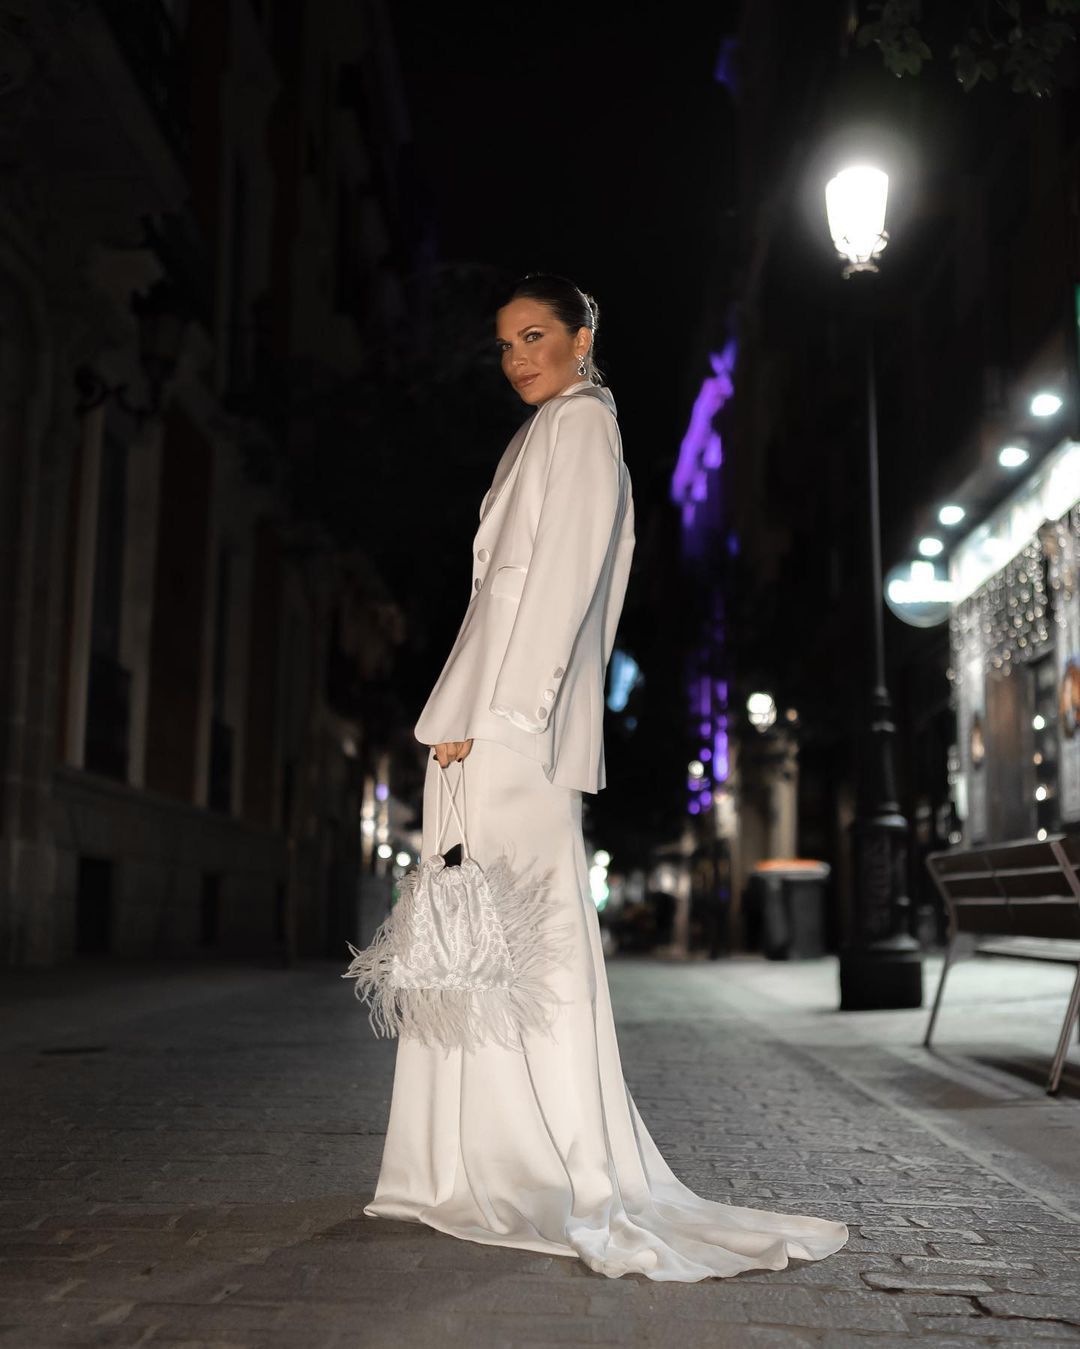 Isabel Marin - vestido pronovias - bolso mano blanco Scilla Cariddi